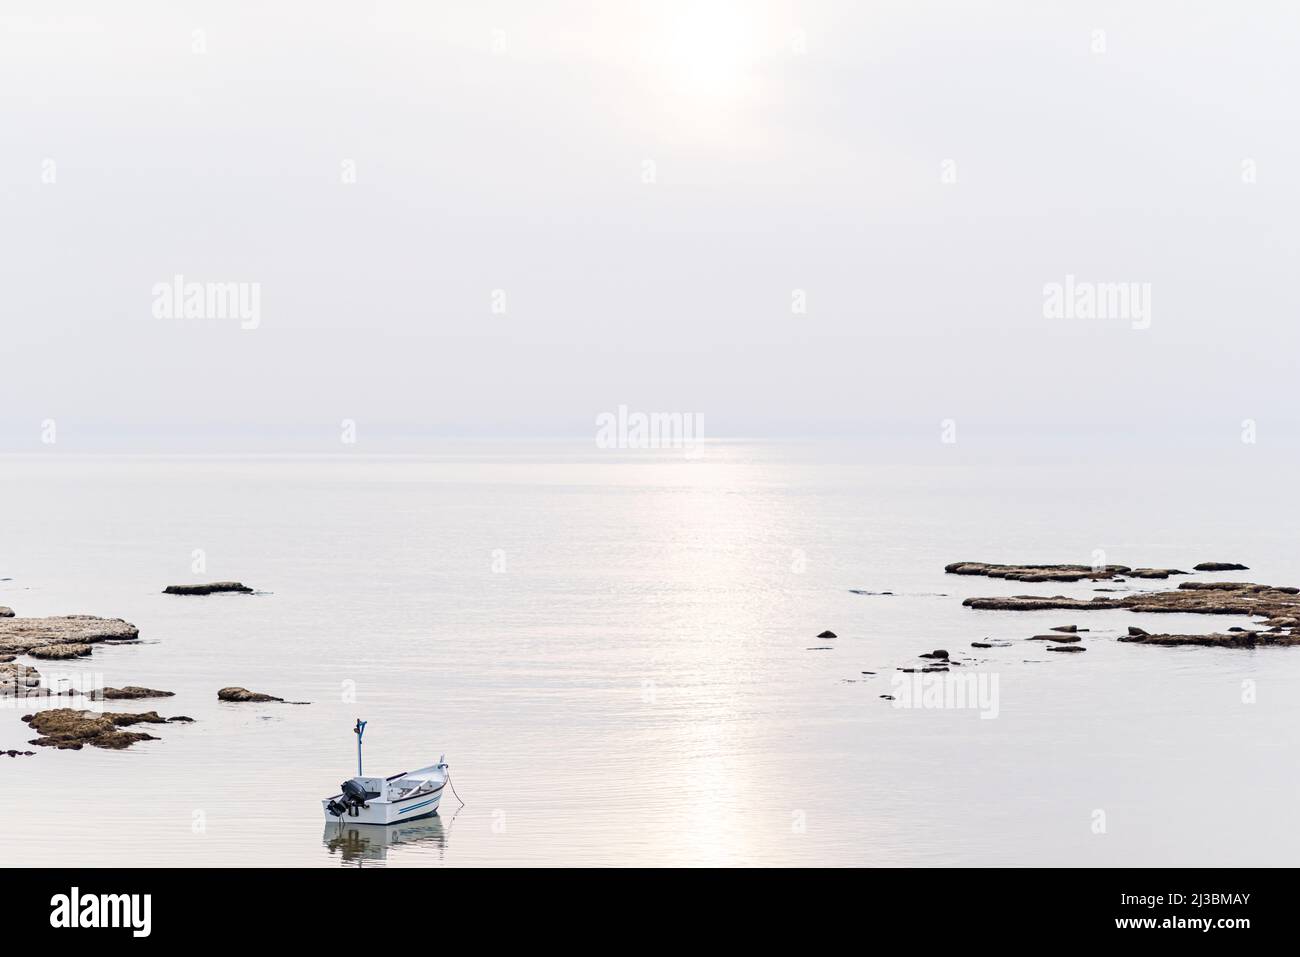 Un petit bateau de pêche sur la plage de Jaffa, par une journée brumeuse. Concept de paix, de calme et de sérénité. Photographie de haute qualité. Photo de haute qualité Banque D'Images